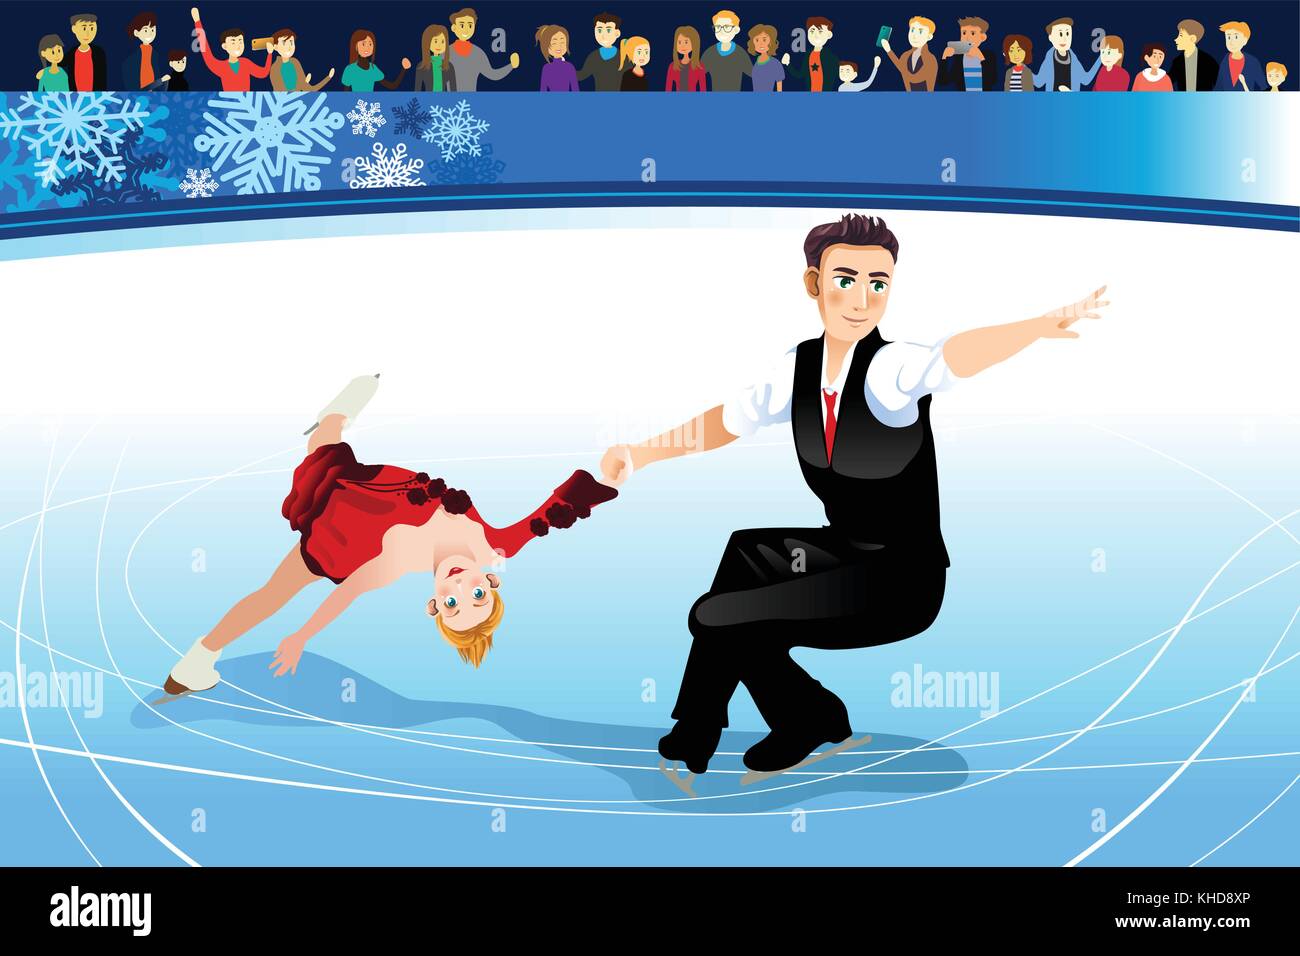 Un vecteur illustration d'athlètes en compétition de patinage artistique Illustration de Vecteur